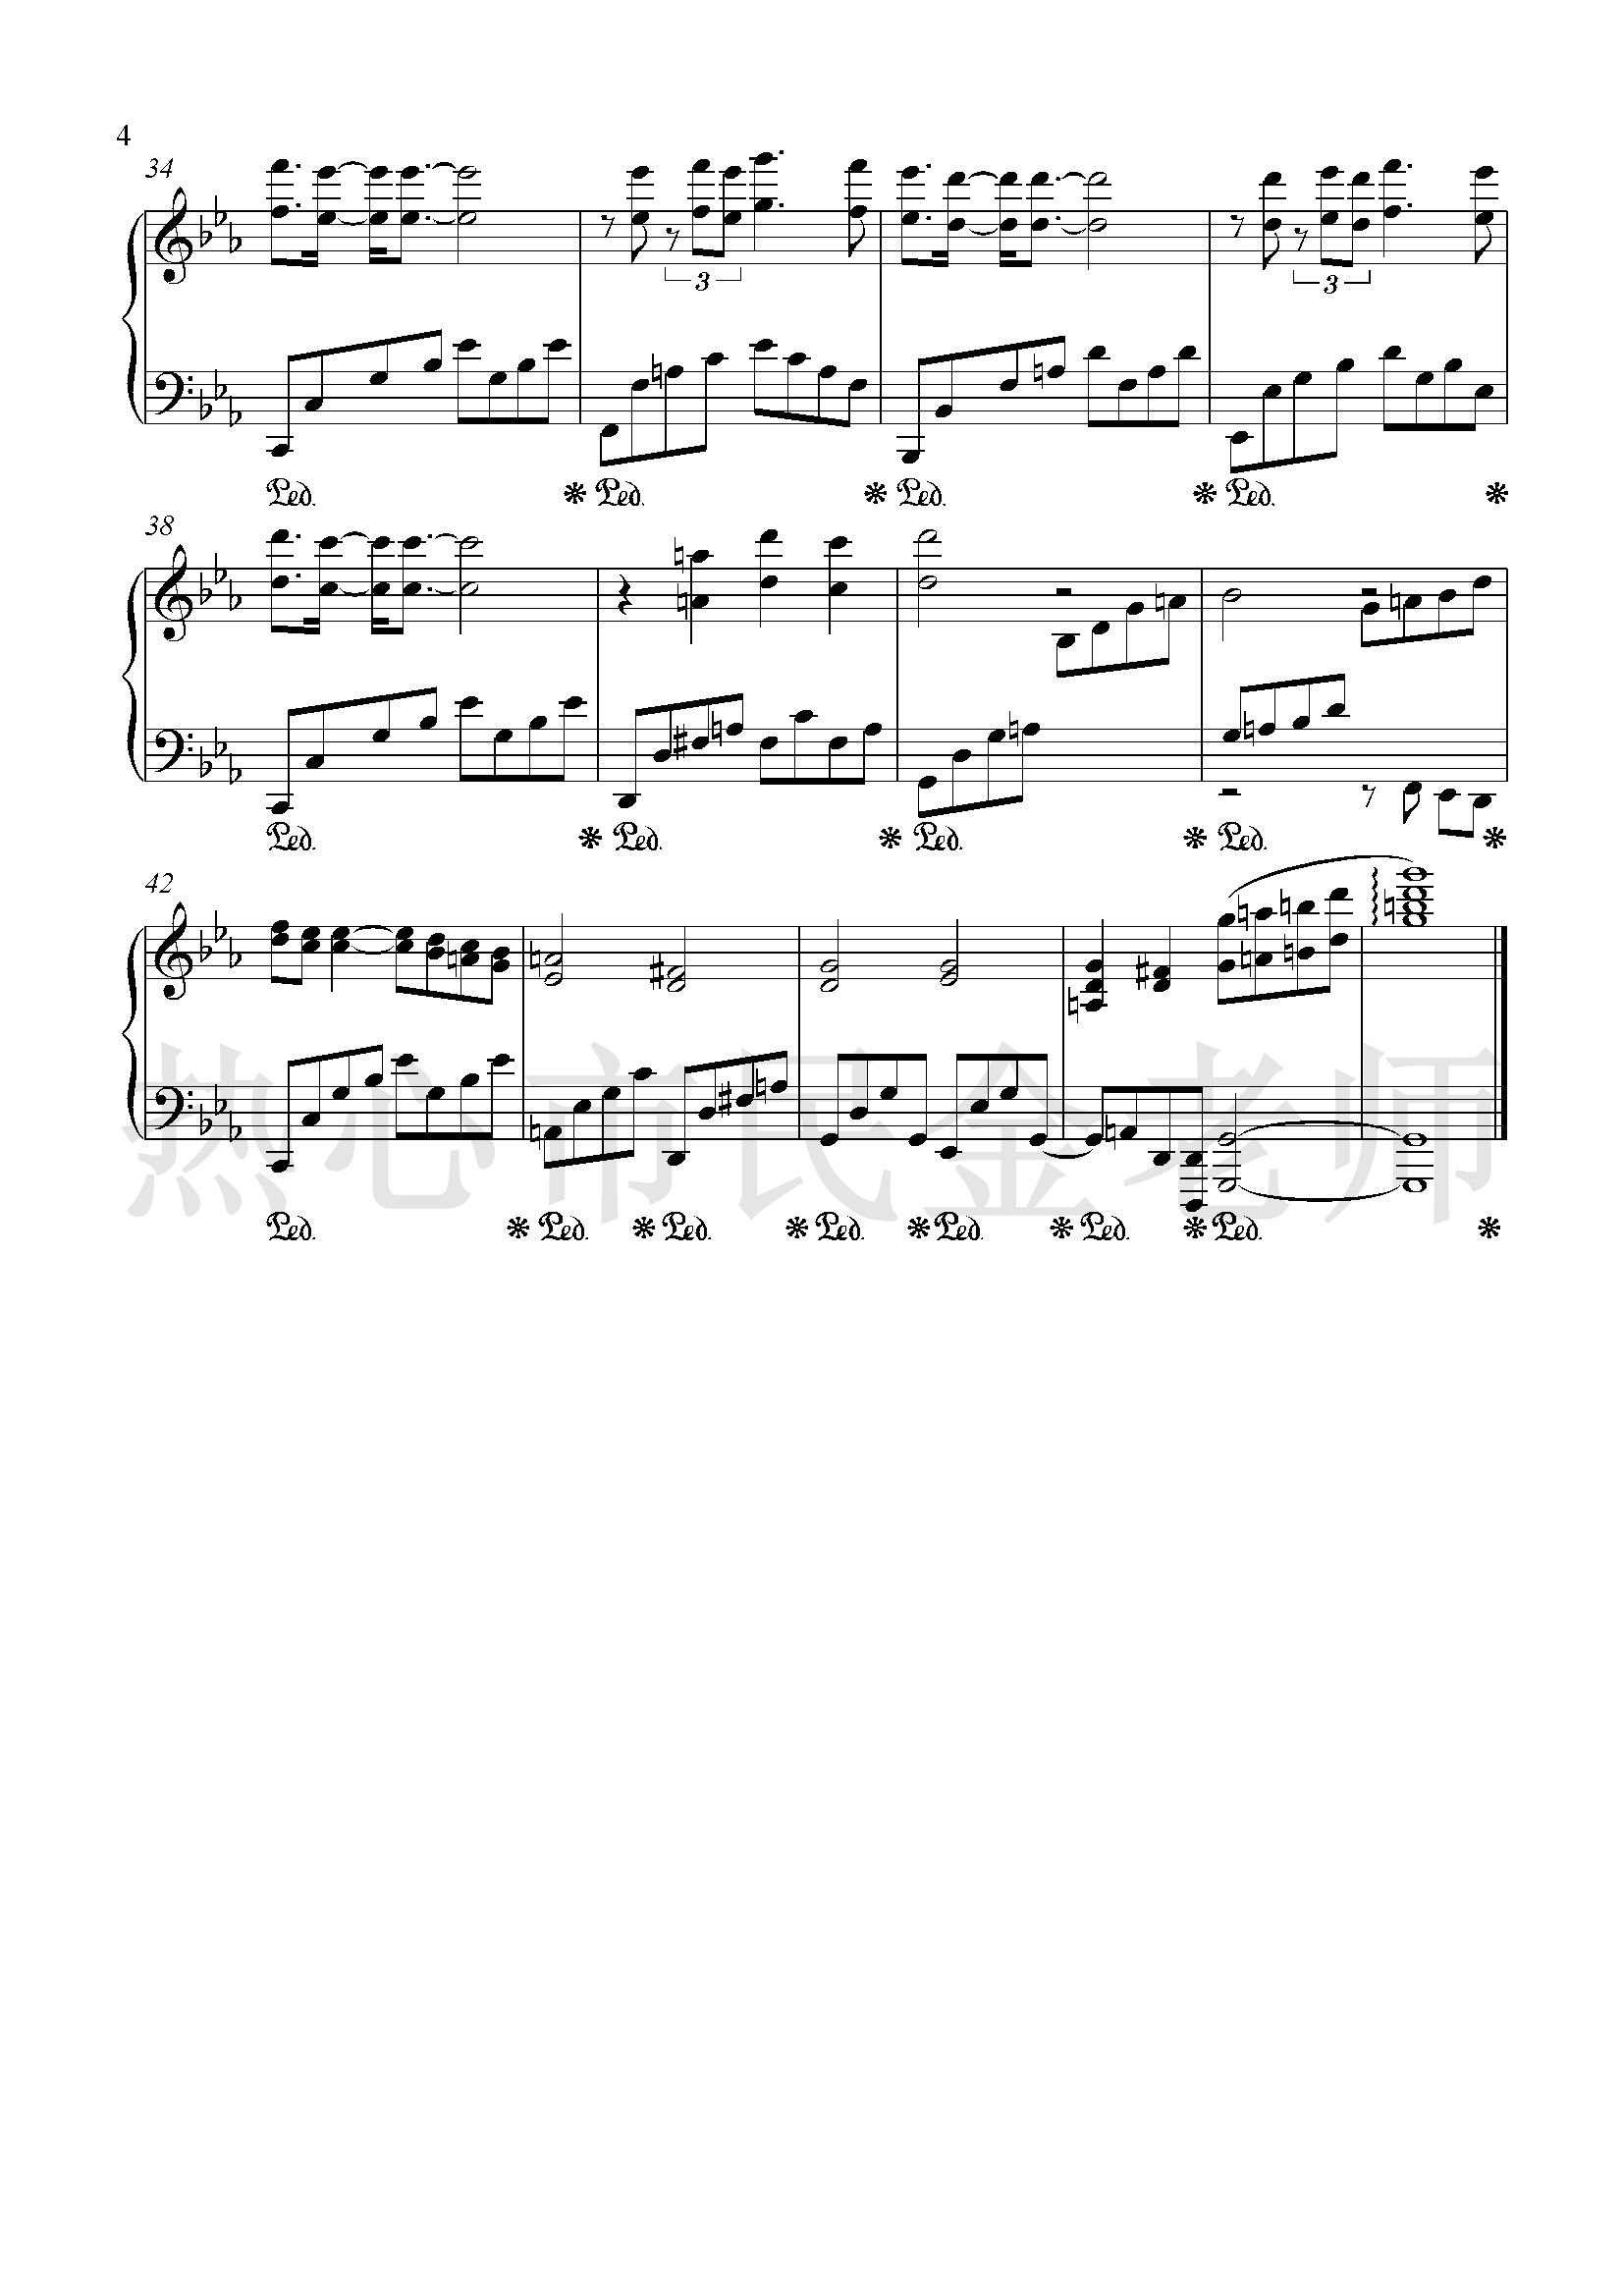 思乡曲钢琴谱-乡愁-金老师独奏1905014